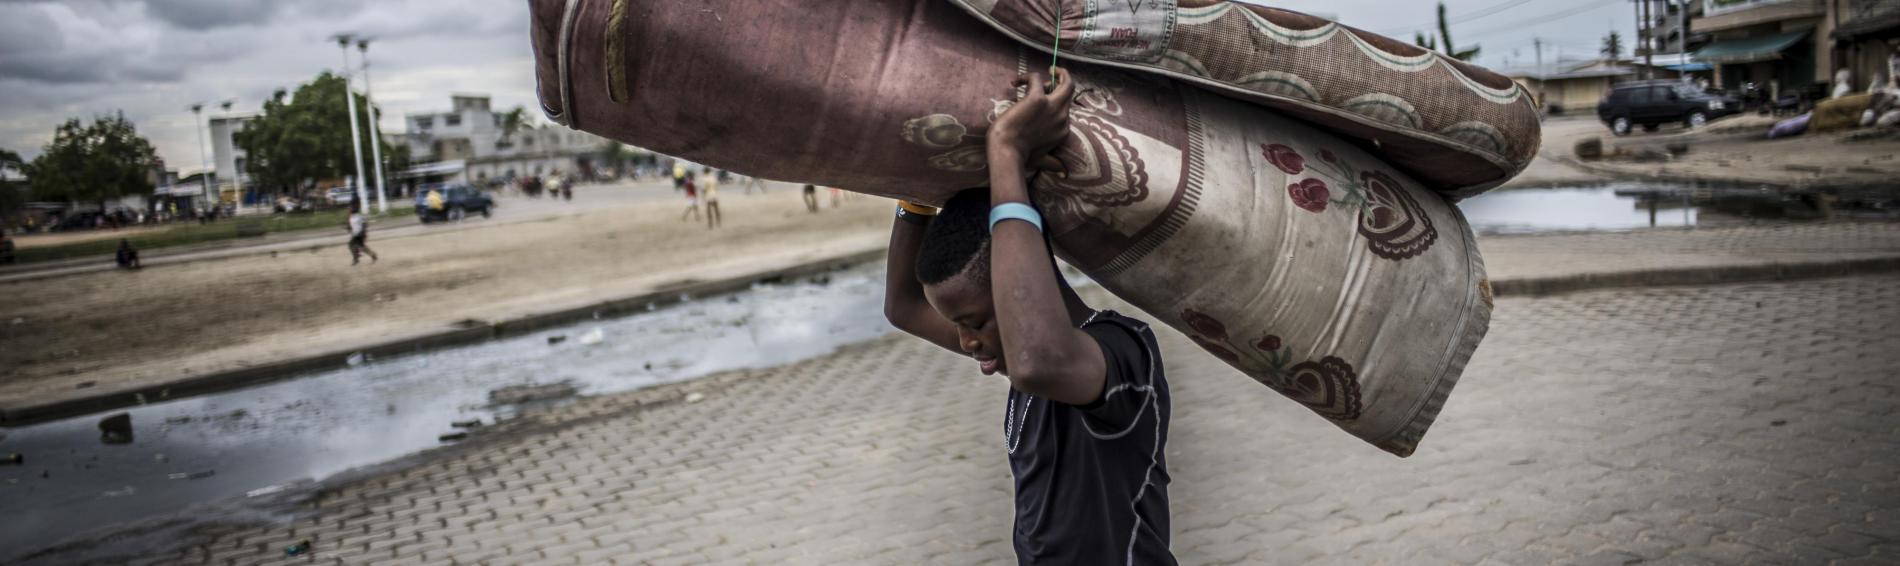 Een tienerjongen op straat in Benin. Het is bewolkt, hij draagt een vochtig, dichtgeplooid matras boven zijn hoofd. Op de achtergrond spelende kinderen in een verlaten buitenwijk.